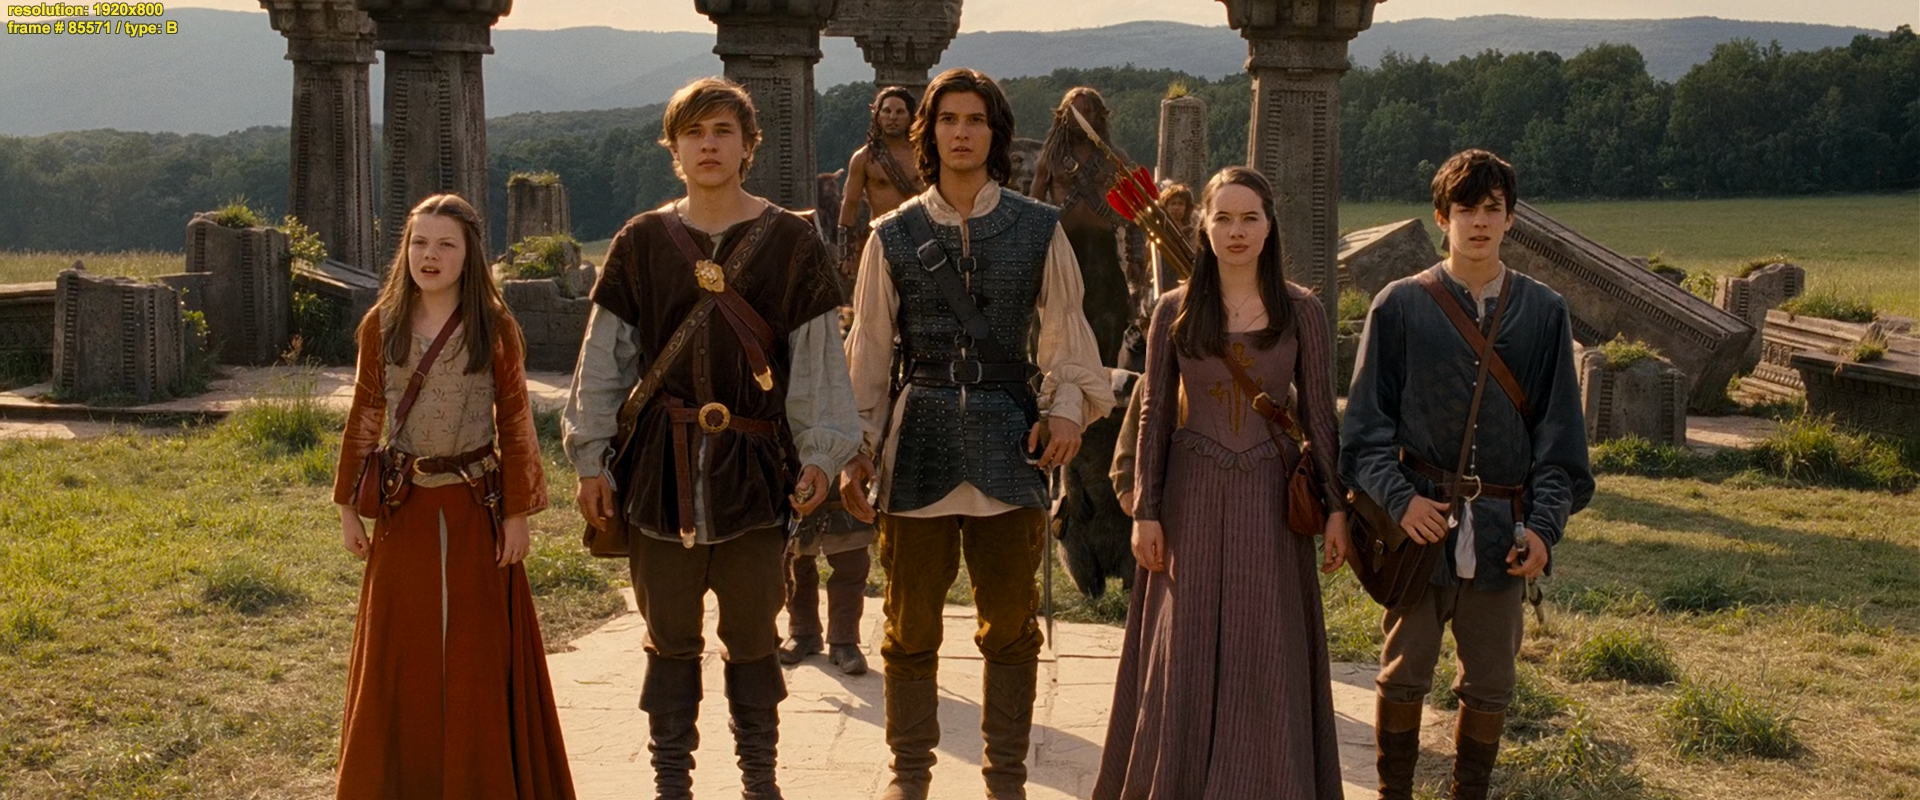 Хроники Нарнии: Принц Каспиан / The Chronicles of Narnia: Prince Caspian (2008) BDRip-HEVC 1080p 10 bit